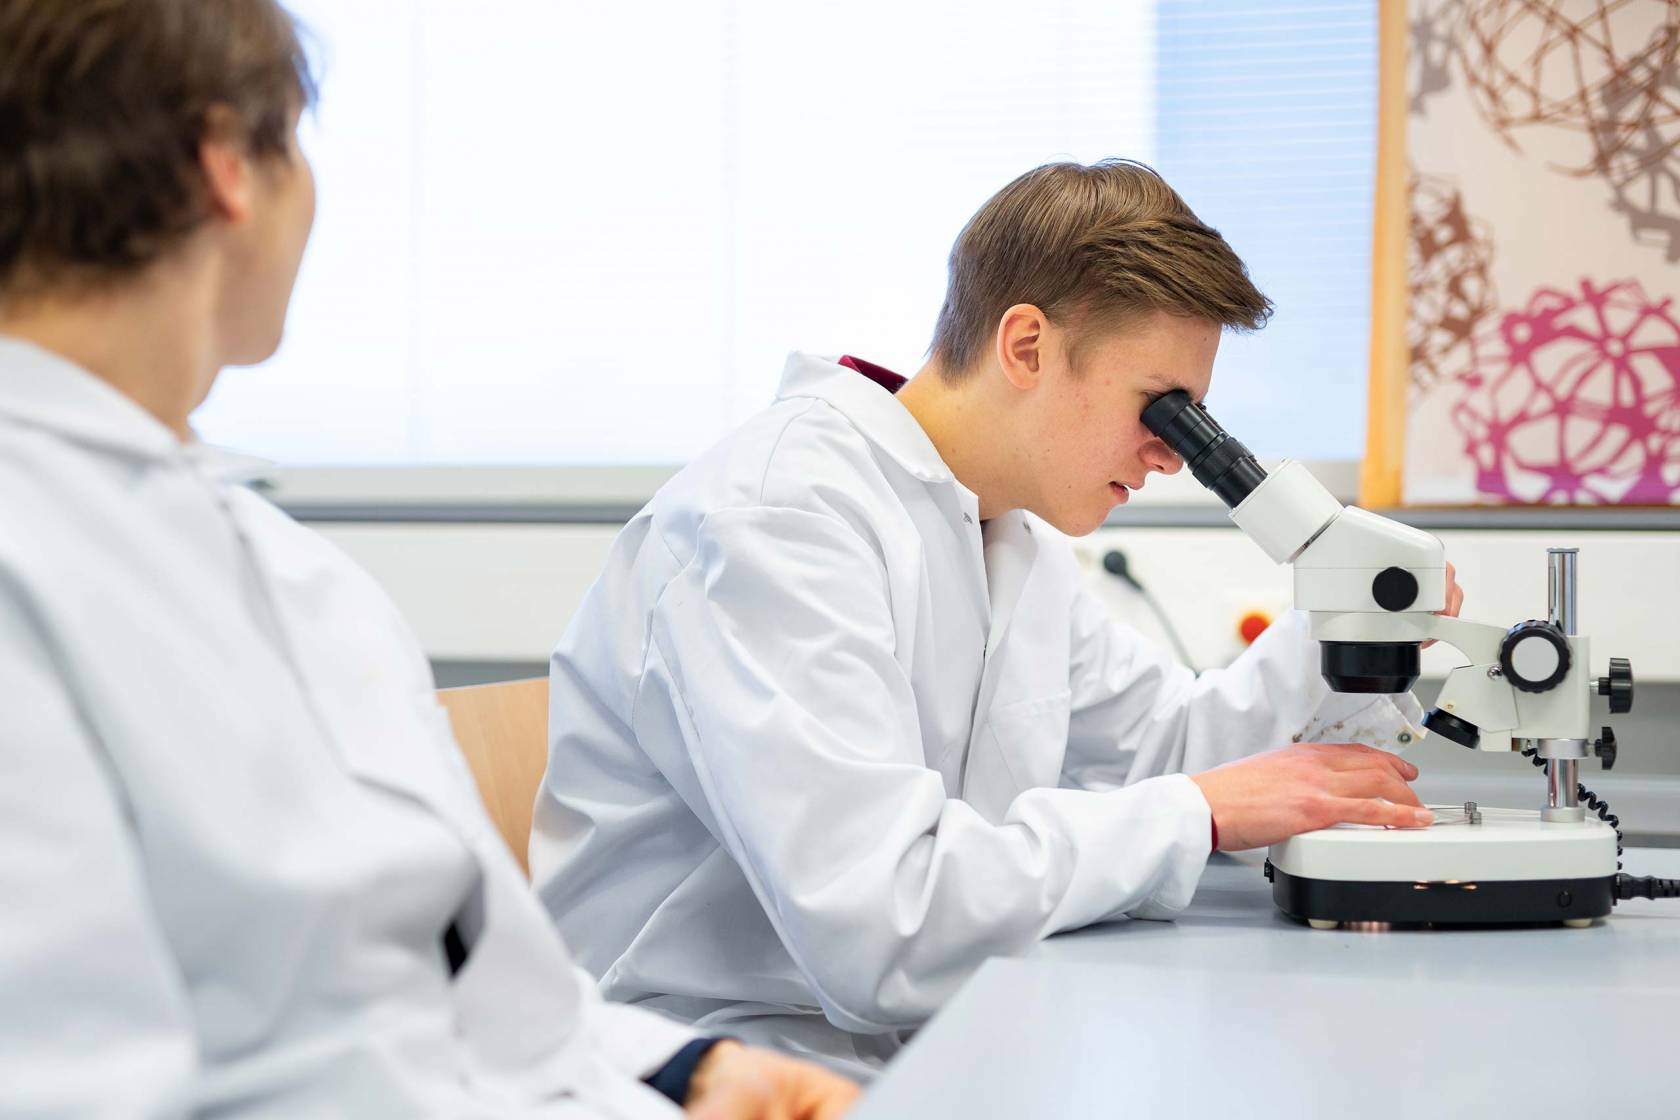 Poika katsoo mikroskoopilla näytettä oppitunnilla Tietotien lukiossa.